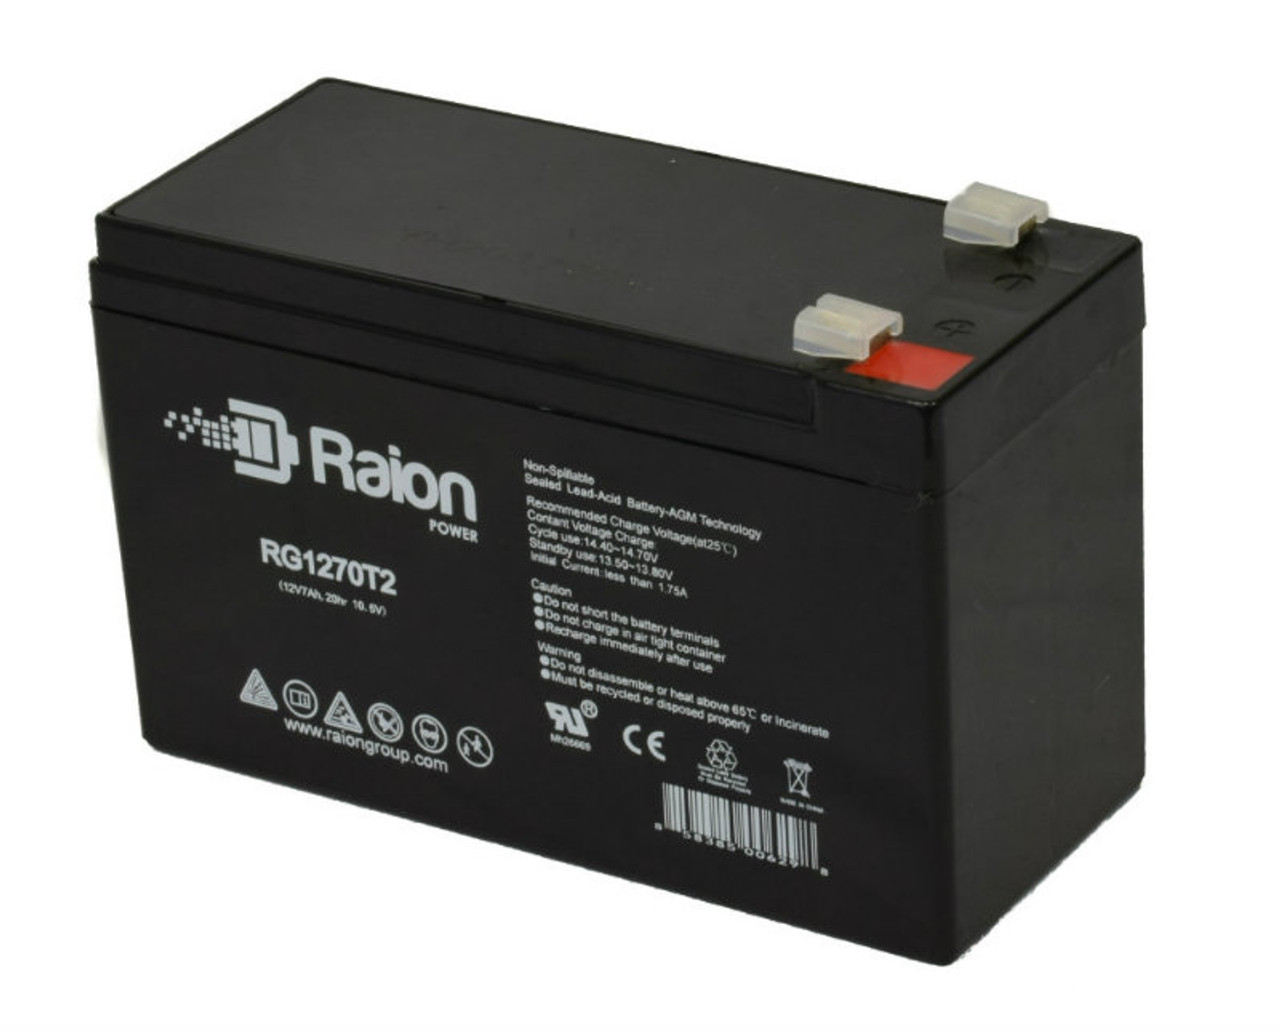 Raion Power RG1270T2 12V 7Ah Lead Acid Battery for Schwinn S200